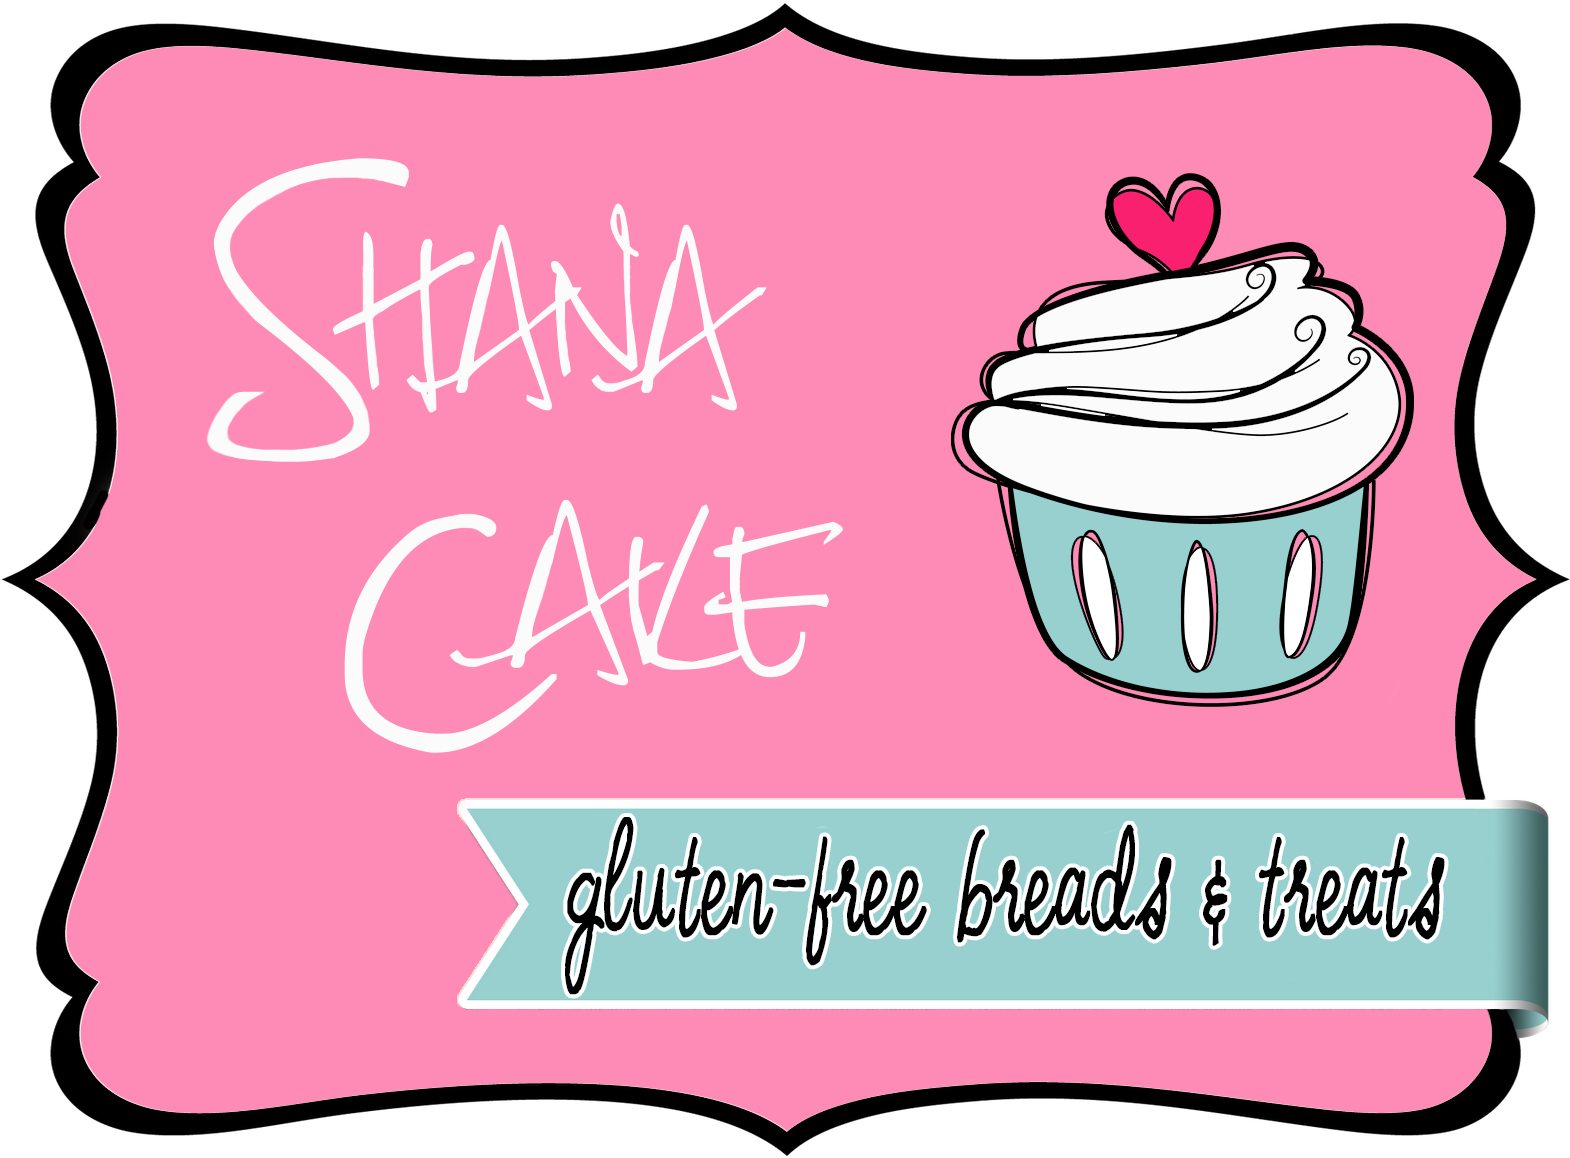 Shana Cake - Shana Cake (1600x1600)